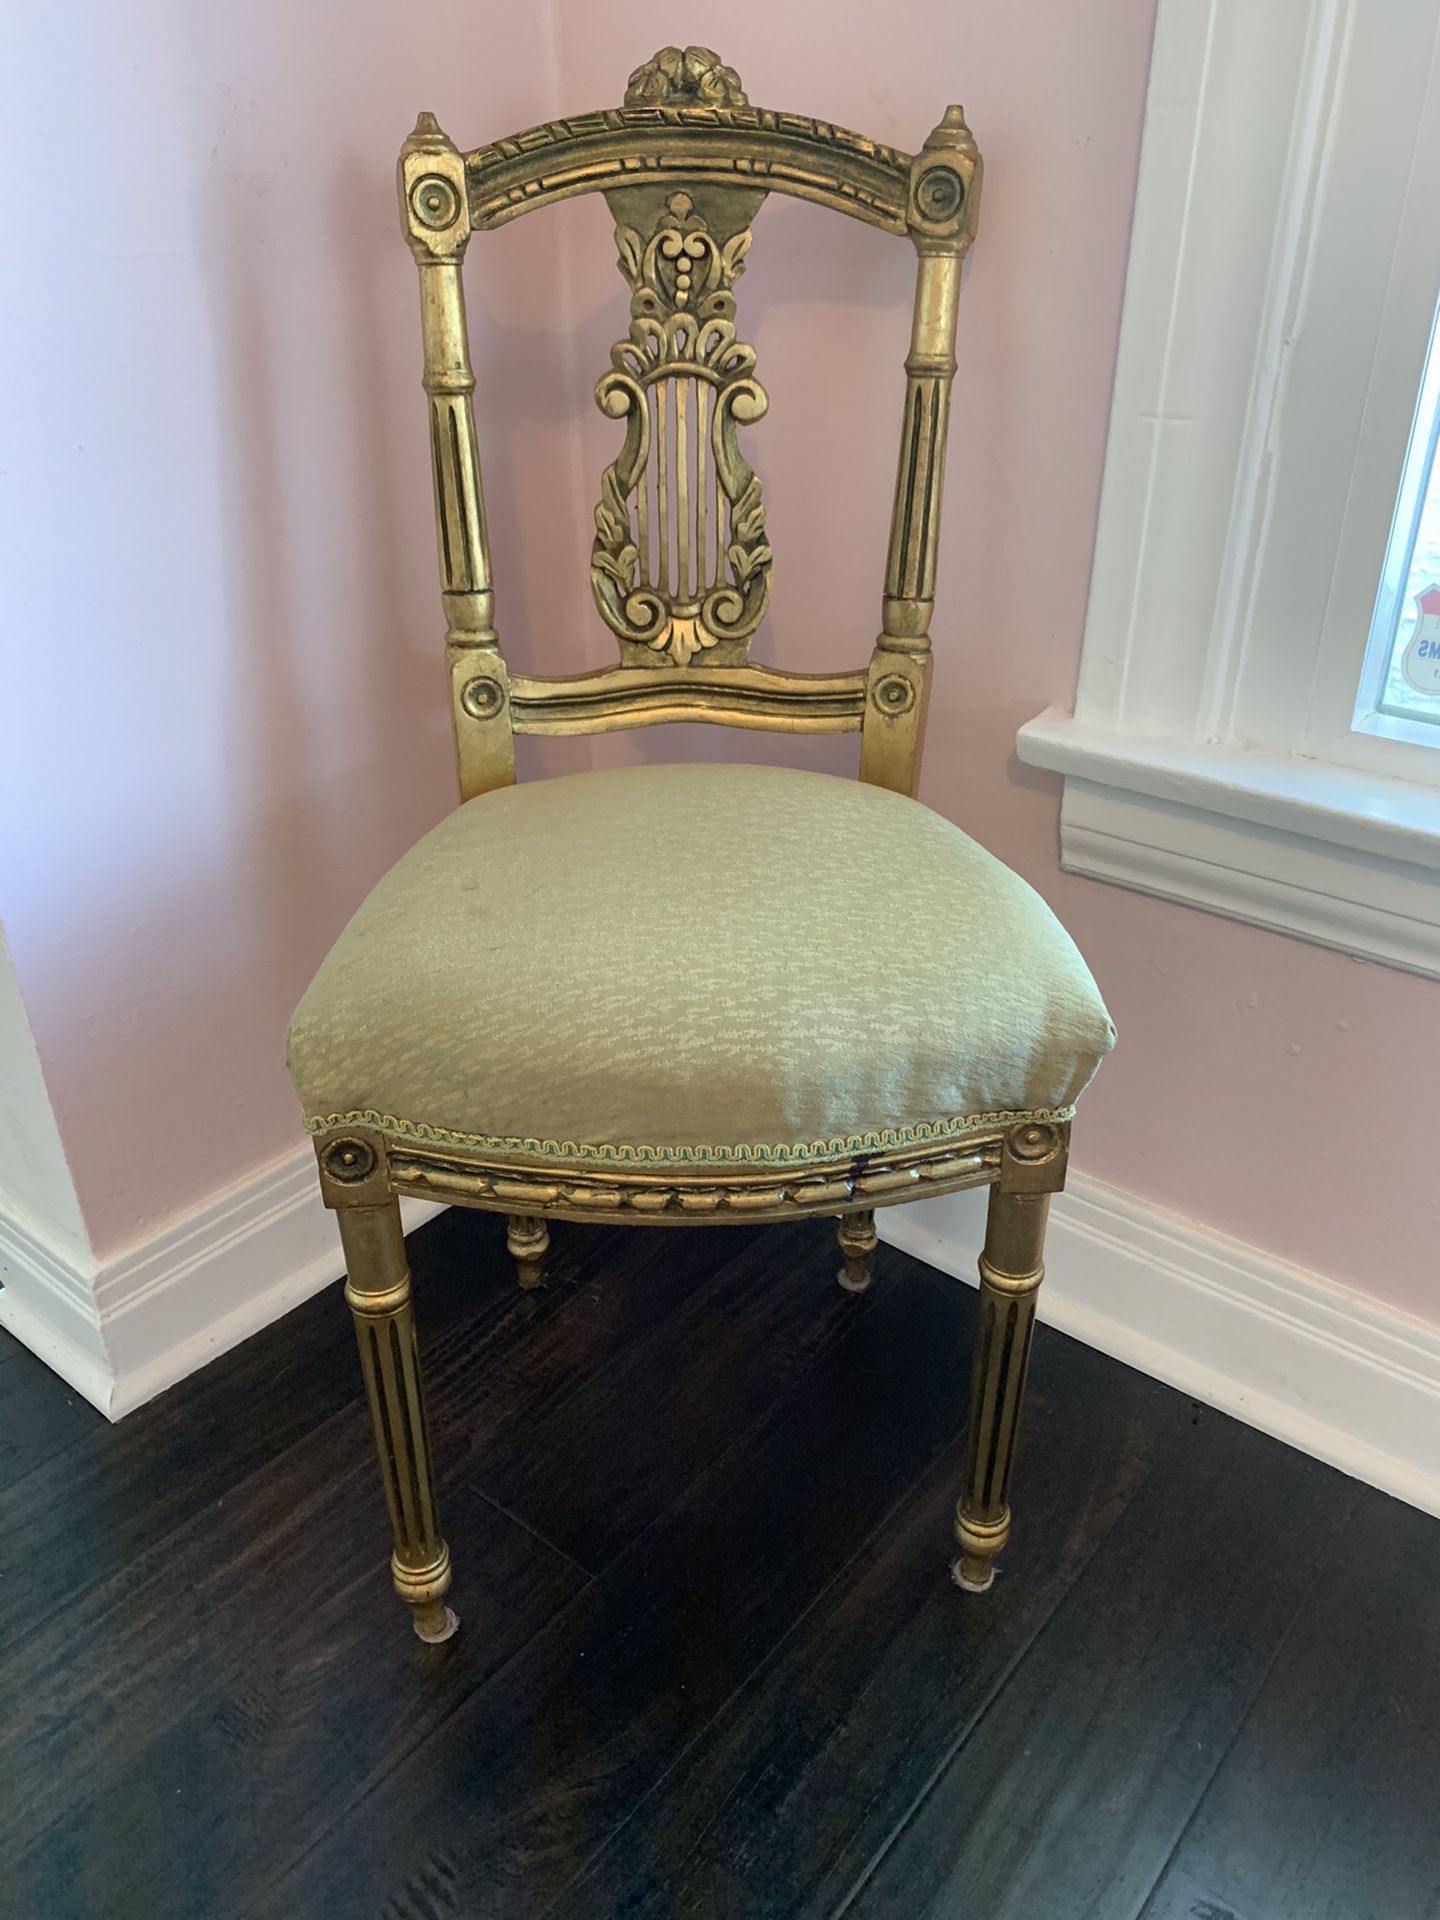 Super cute antique chair with gold paint. Measurements shown